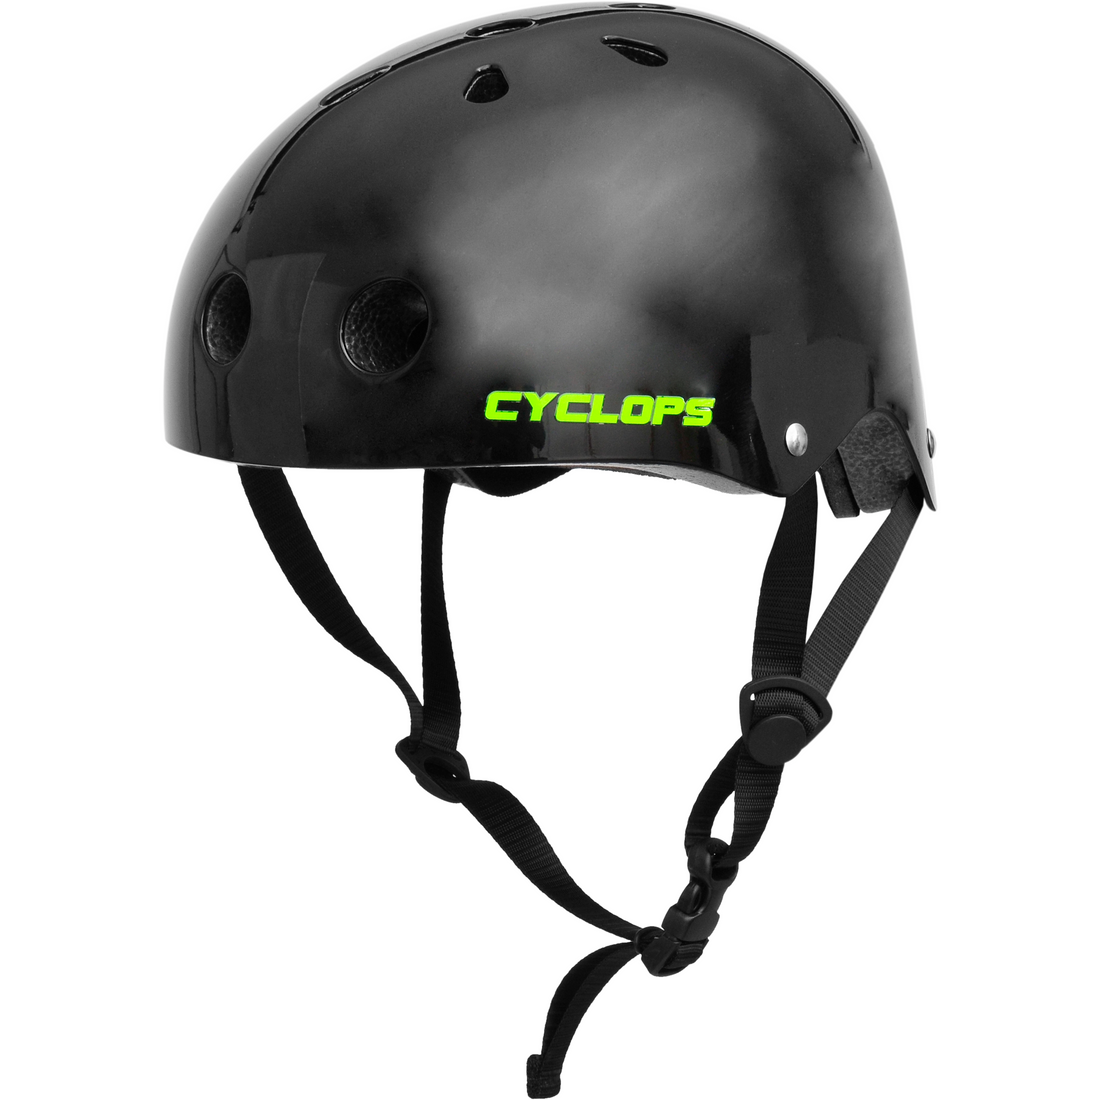 Cyclops Skate Helmet